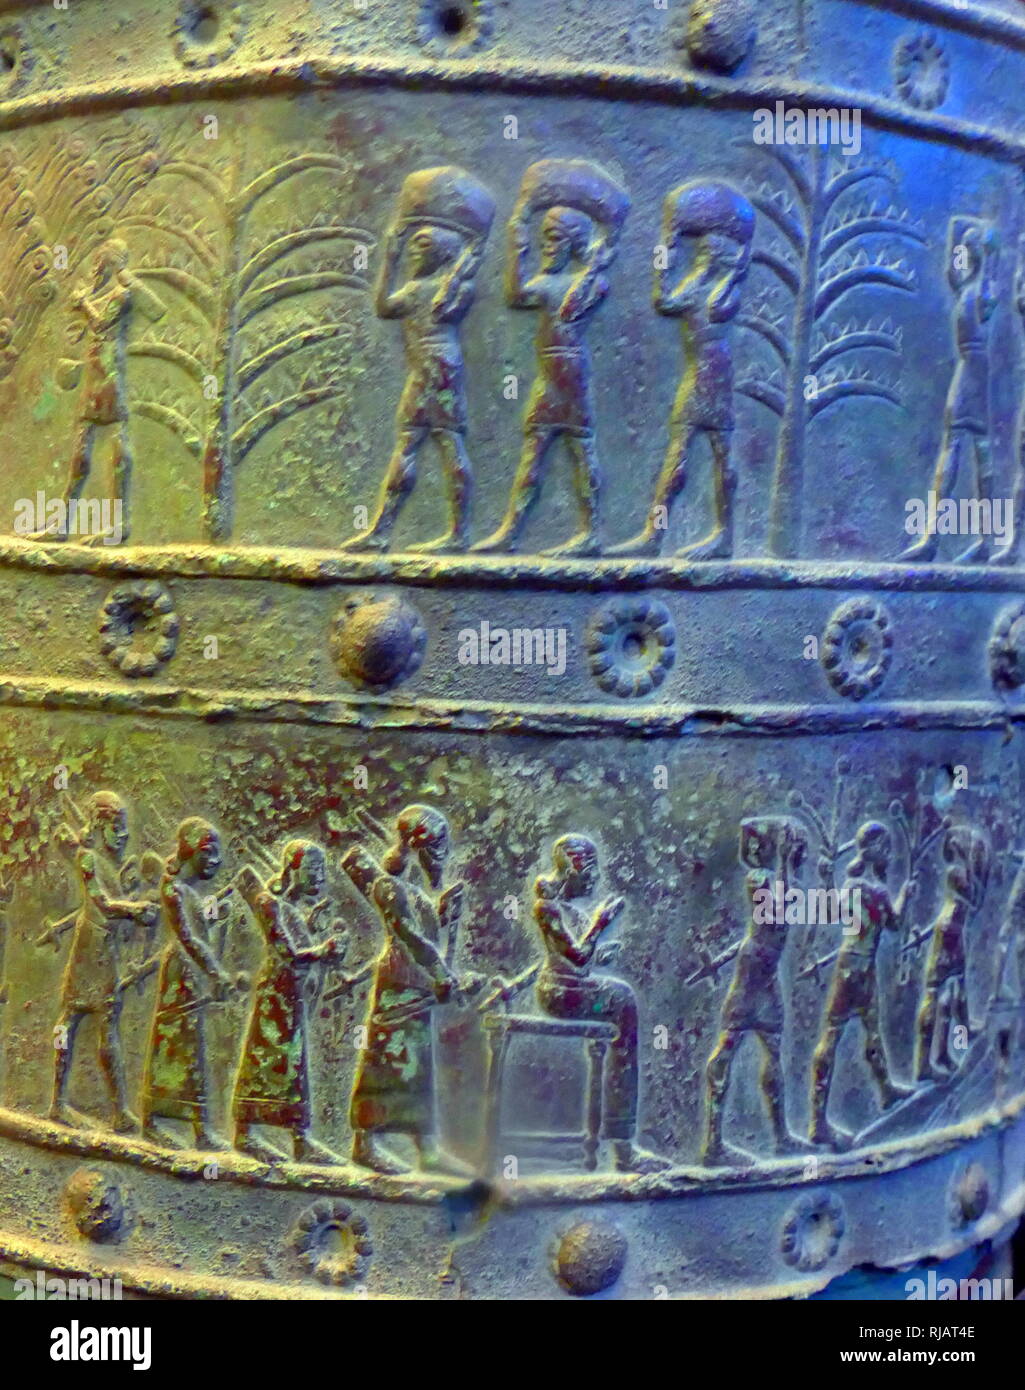 Cast in rilievo in una banda di bronzo dal Balawat cancelli. Balawat (antica Imgur-Enlil), risalente al regna di Ashurnasirpal II (r. 883-859 BC) e Shalmaneser III (r. 859-824 a.C.). Il loro uso estensivo di arte narrativa che ritraggono le gesta del re di Assiria ha cementato la loro posizione di alcune delle più importanti opere superstiti di arte dell'Impero Neo-Assyrian, paragonabile al vasto Palazzo assiro rilievi. Quando l'impero Neo-Assyrian cadde nel 614-612 A.C. Balawat fu distrutta. Foto Stock